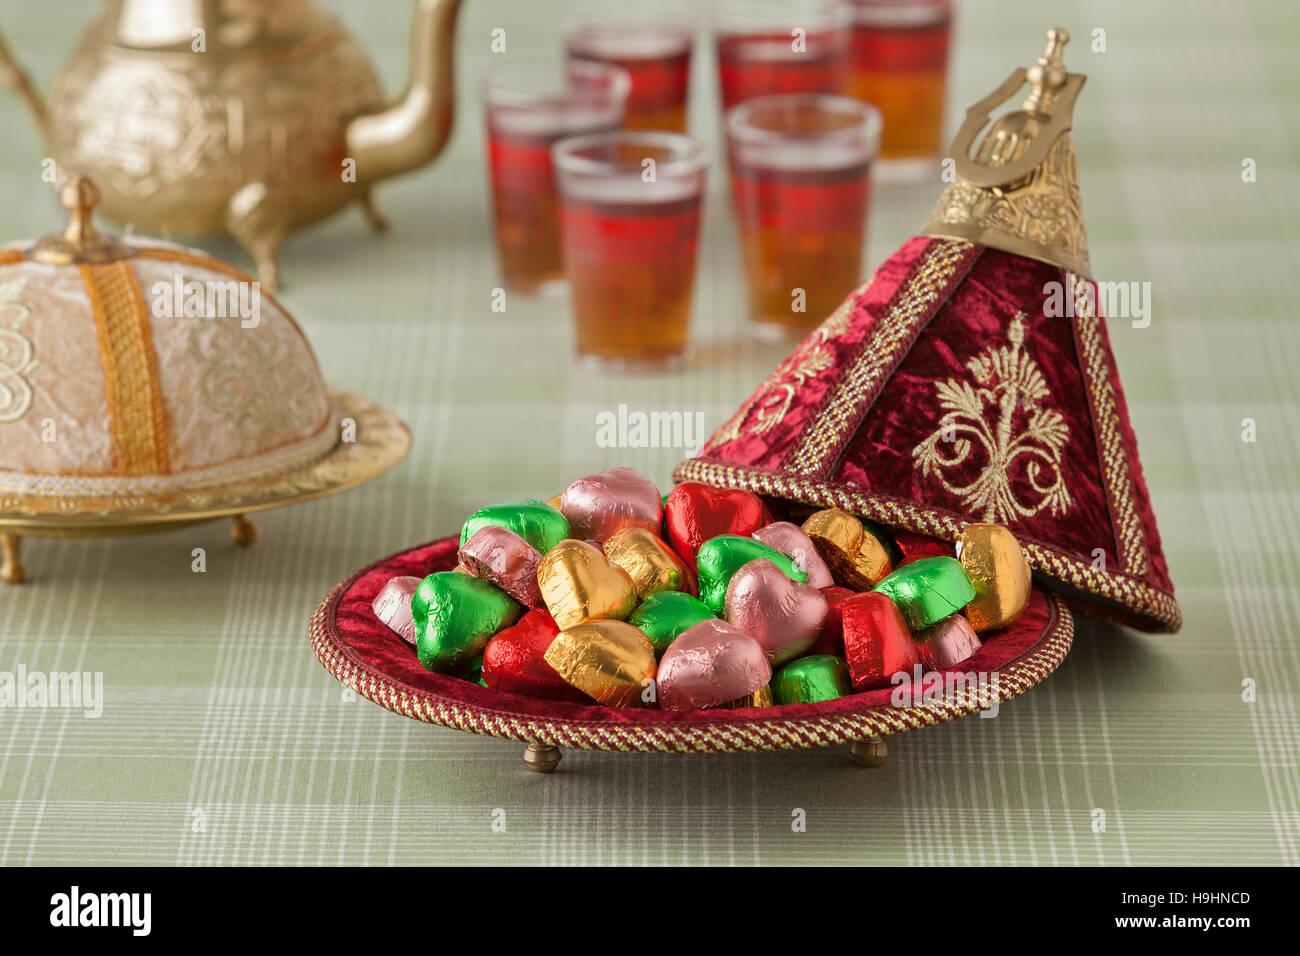 Les sucreries de fête marocaine dans un tajine rouge et plateau Banque D'Images